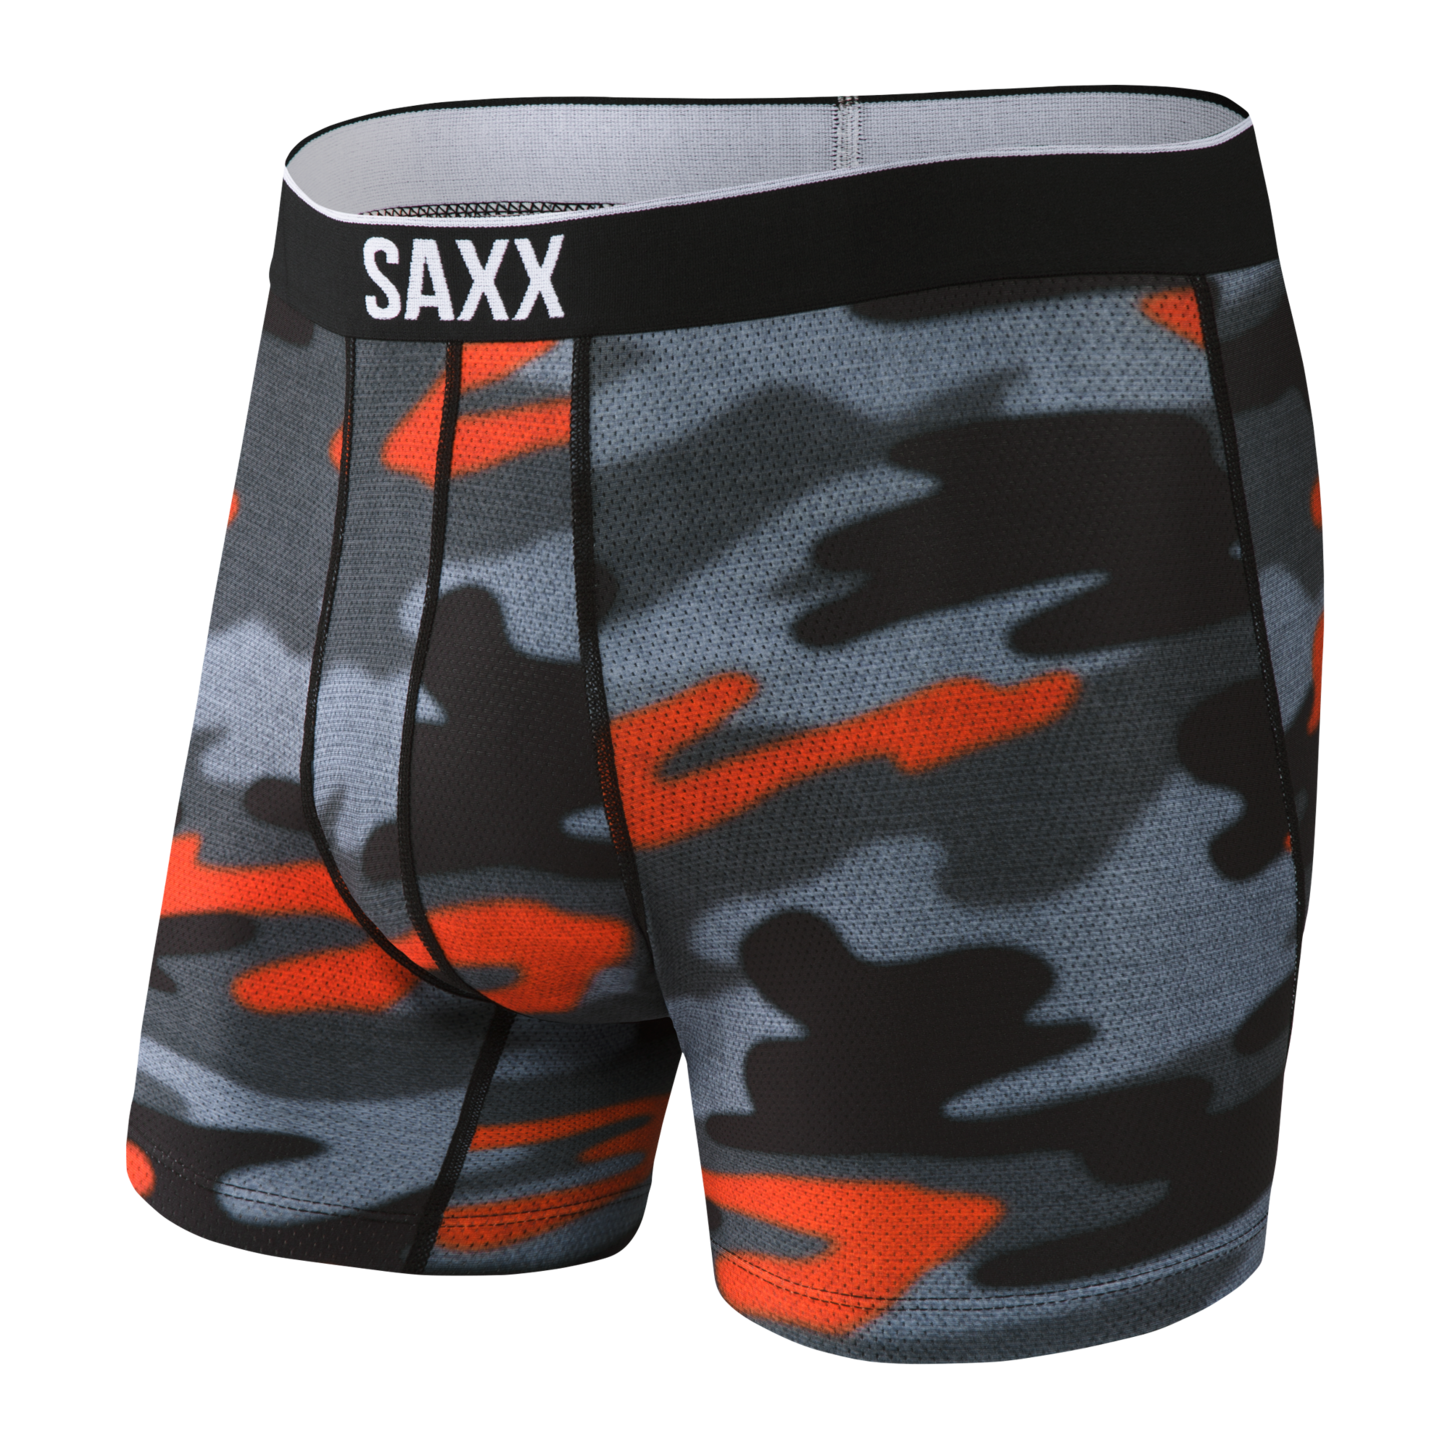 SAXX Volt Boxer Brief – The Halifax Bra Store